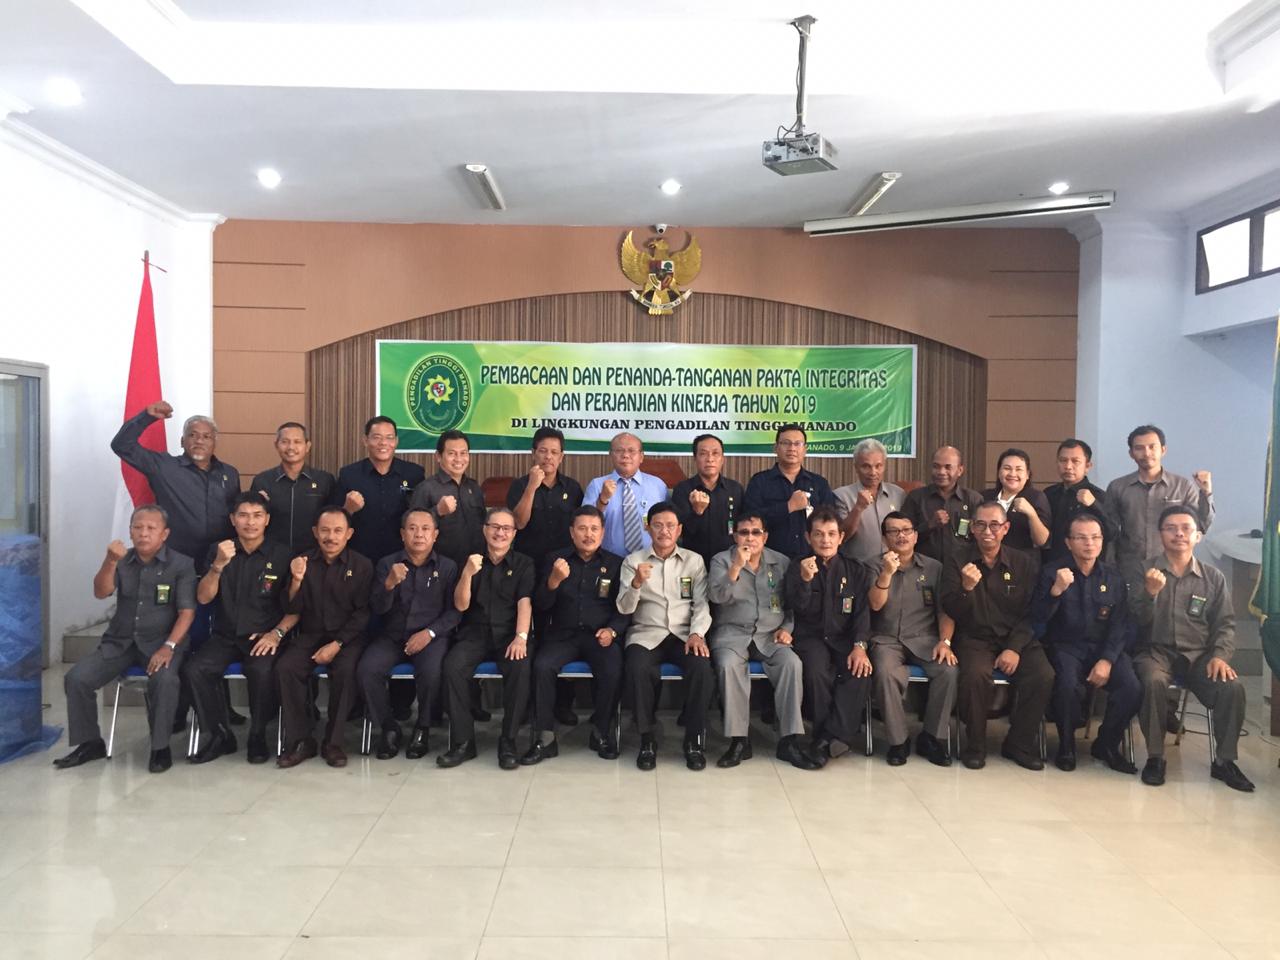 Pembacaan dan Penandatanganan Pakta Integritas di Lingkungan Pengadilan Tinggi Manado dan Ketua Pengadilan Negeri se-Wilayah Pengadilan Tinggi Manado Tahun 2019